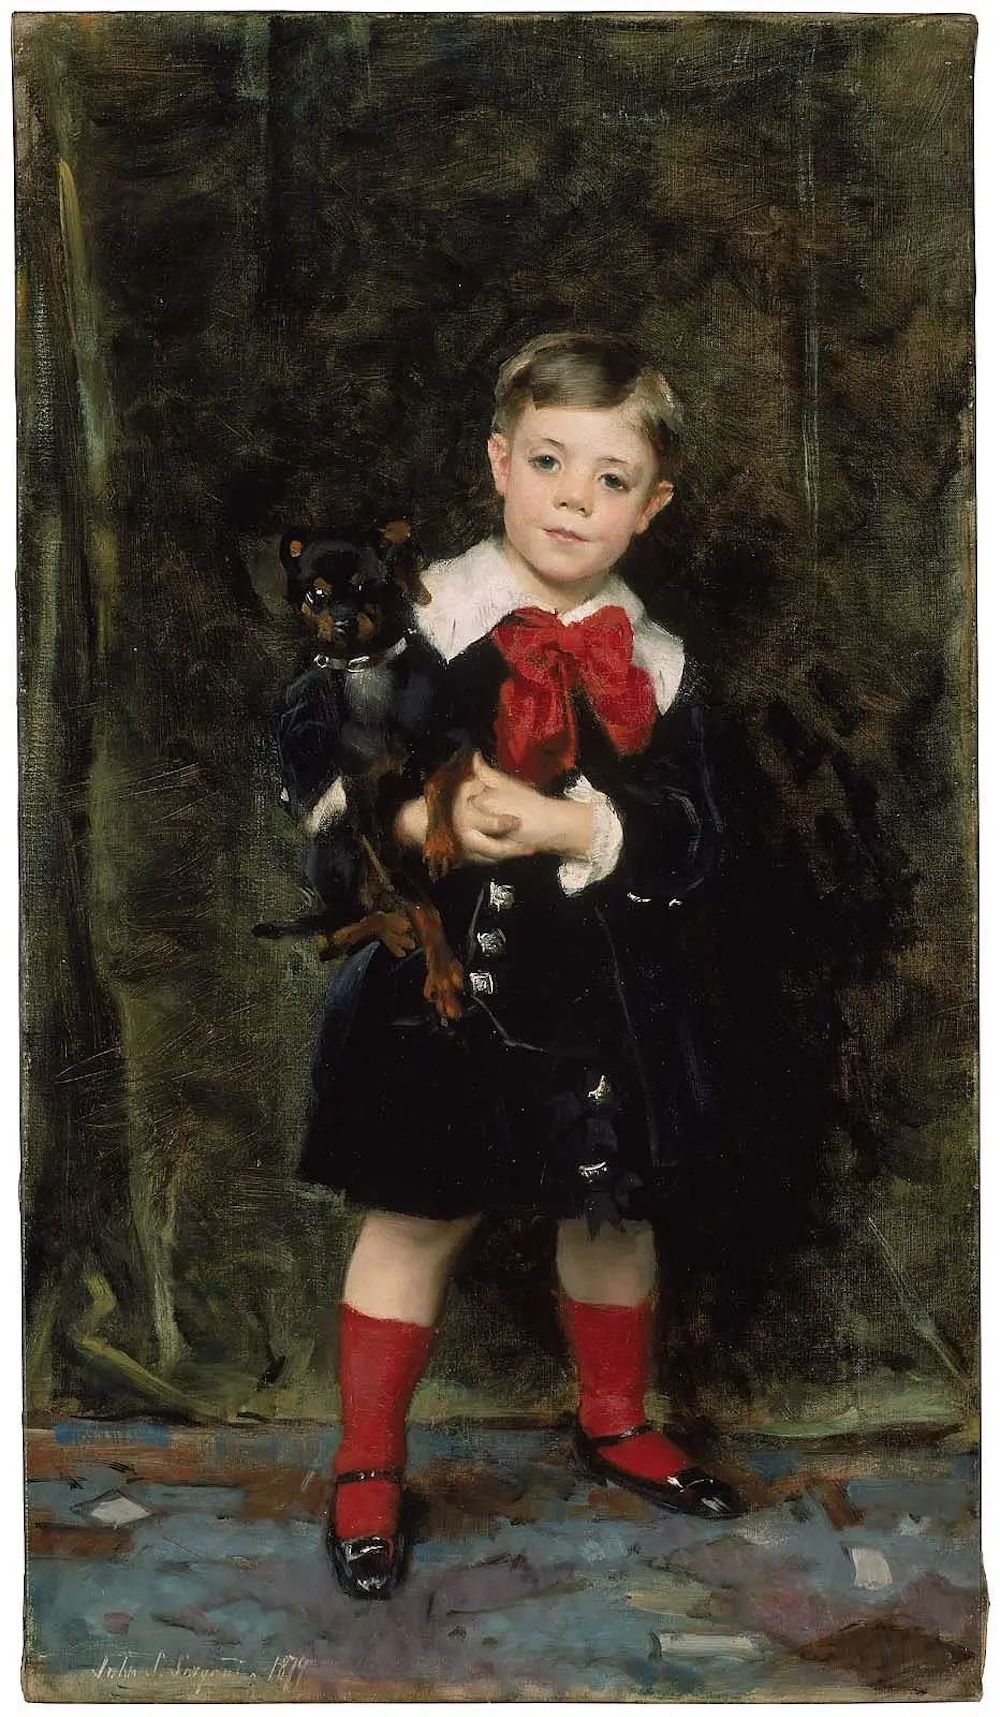 《罗伯特·德·塞弗里欧》，约翰·辛格·萨金特，美国，1879，布面油画 萨金特受委托为7岁的小罗伯特画肖像画，此前不久，他刚在由国家赞助的重要展览巴黎沙龙上展示了自己的绘画实力。 1921年，他把这幅画卖给了纽约的诺德勒画廊。在那之后，这幅画就传到了波士顿美术博物馆。尽管如此，这幅肖像揭示了萨金特职业生涯早期的技术和兴趣，当时他的沙龙作品才刚刚开始为他获得认可。